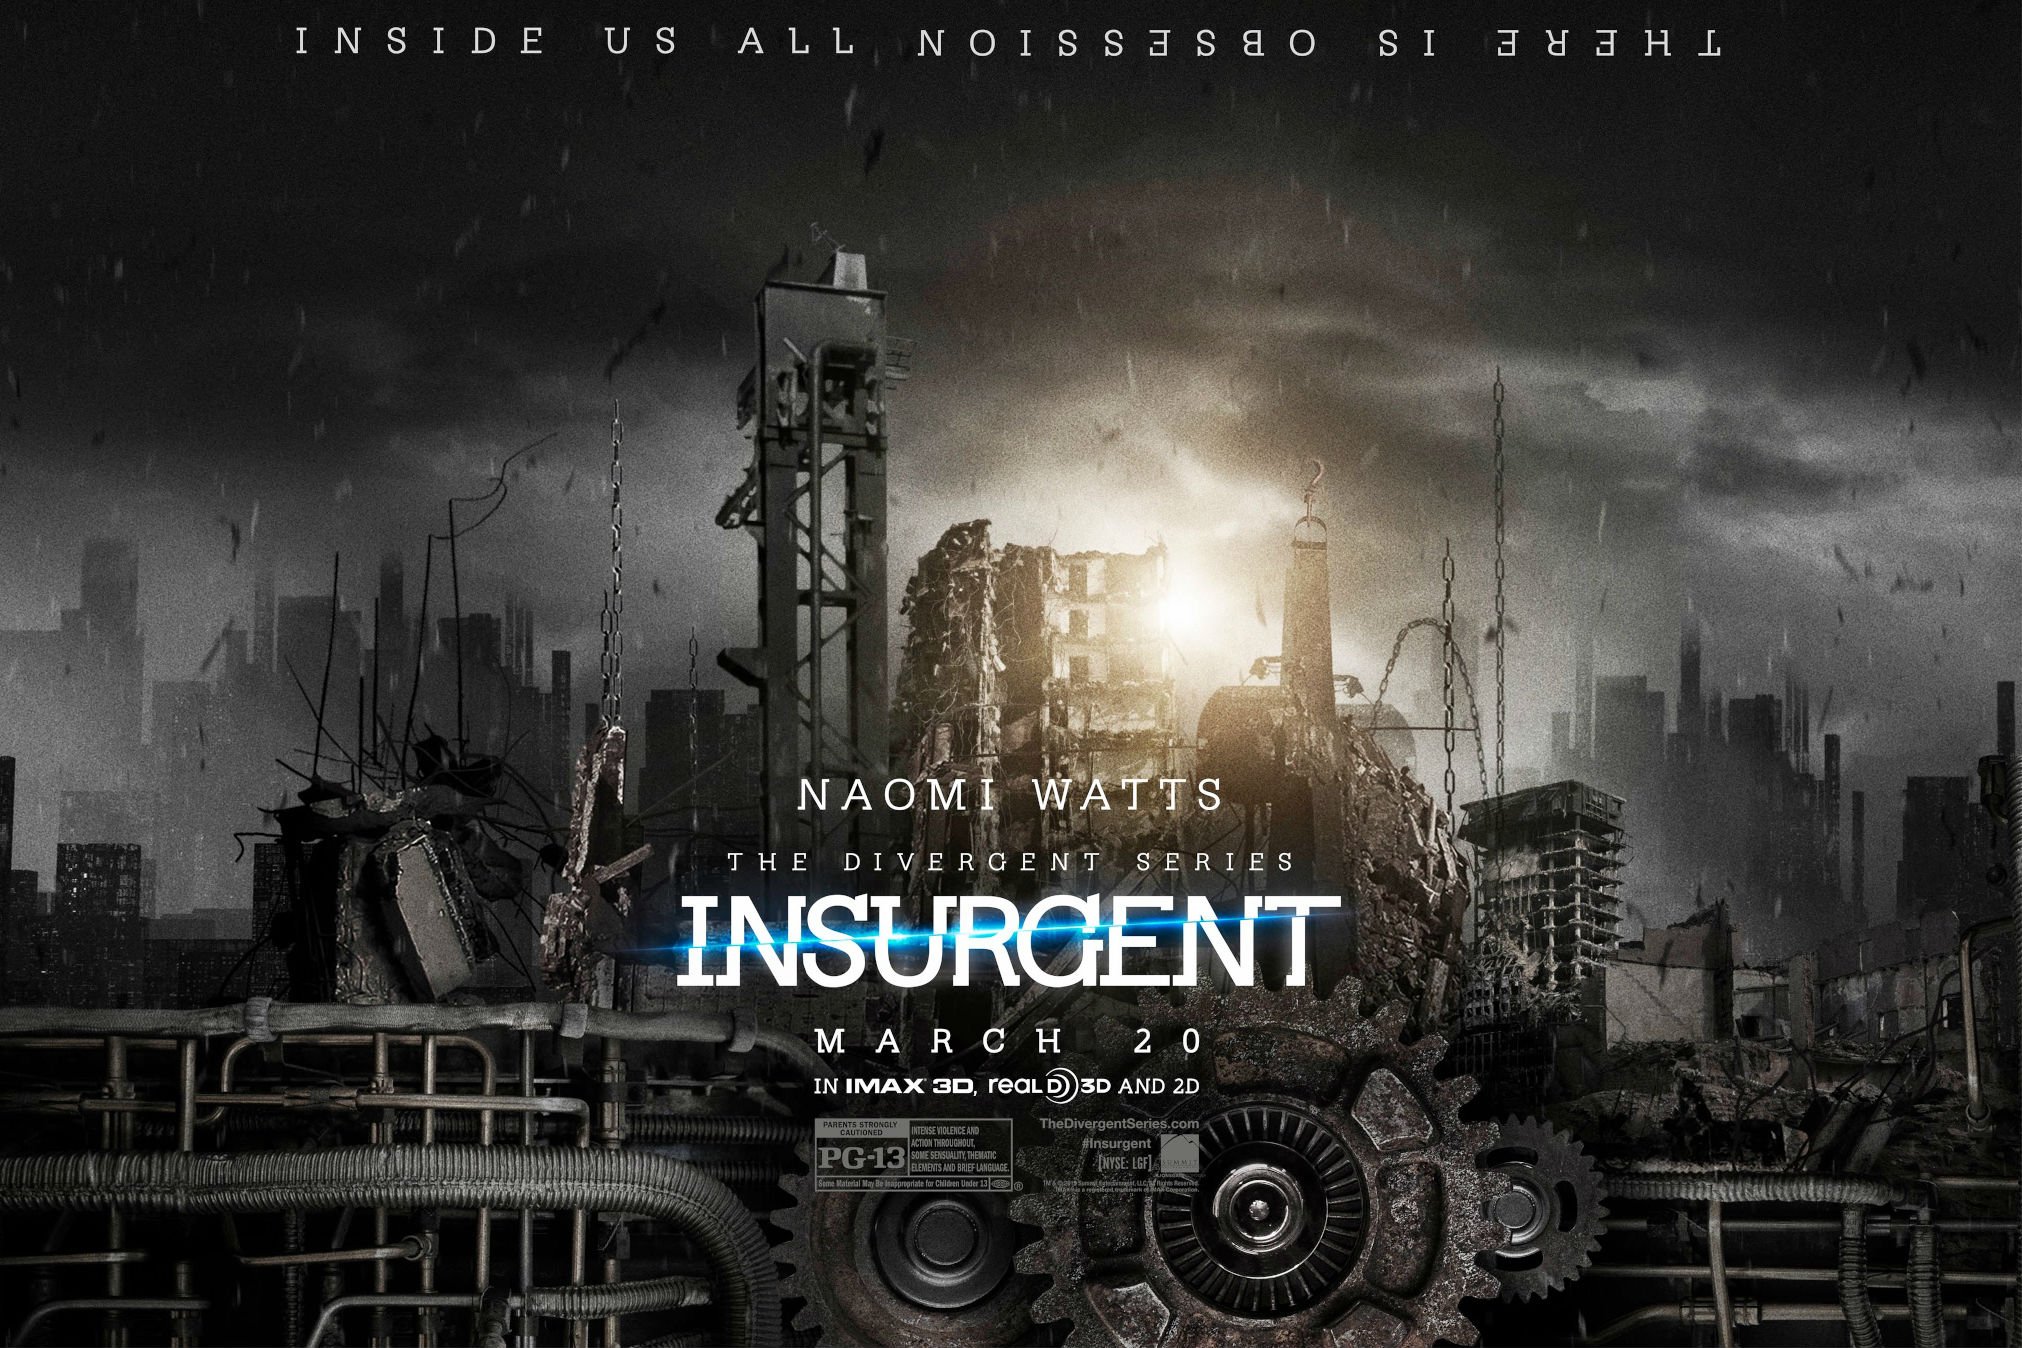 divergent series insurgent full movie online free